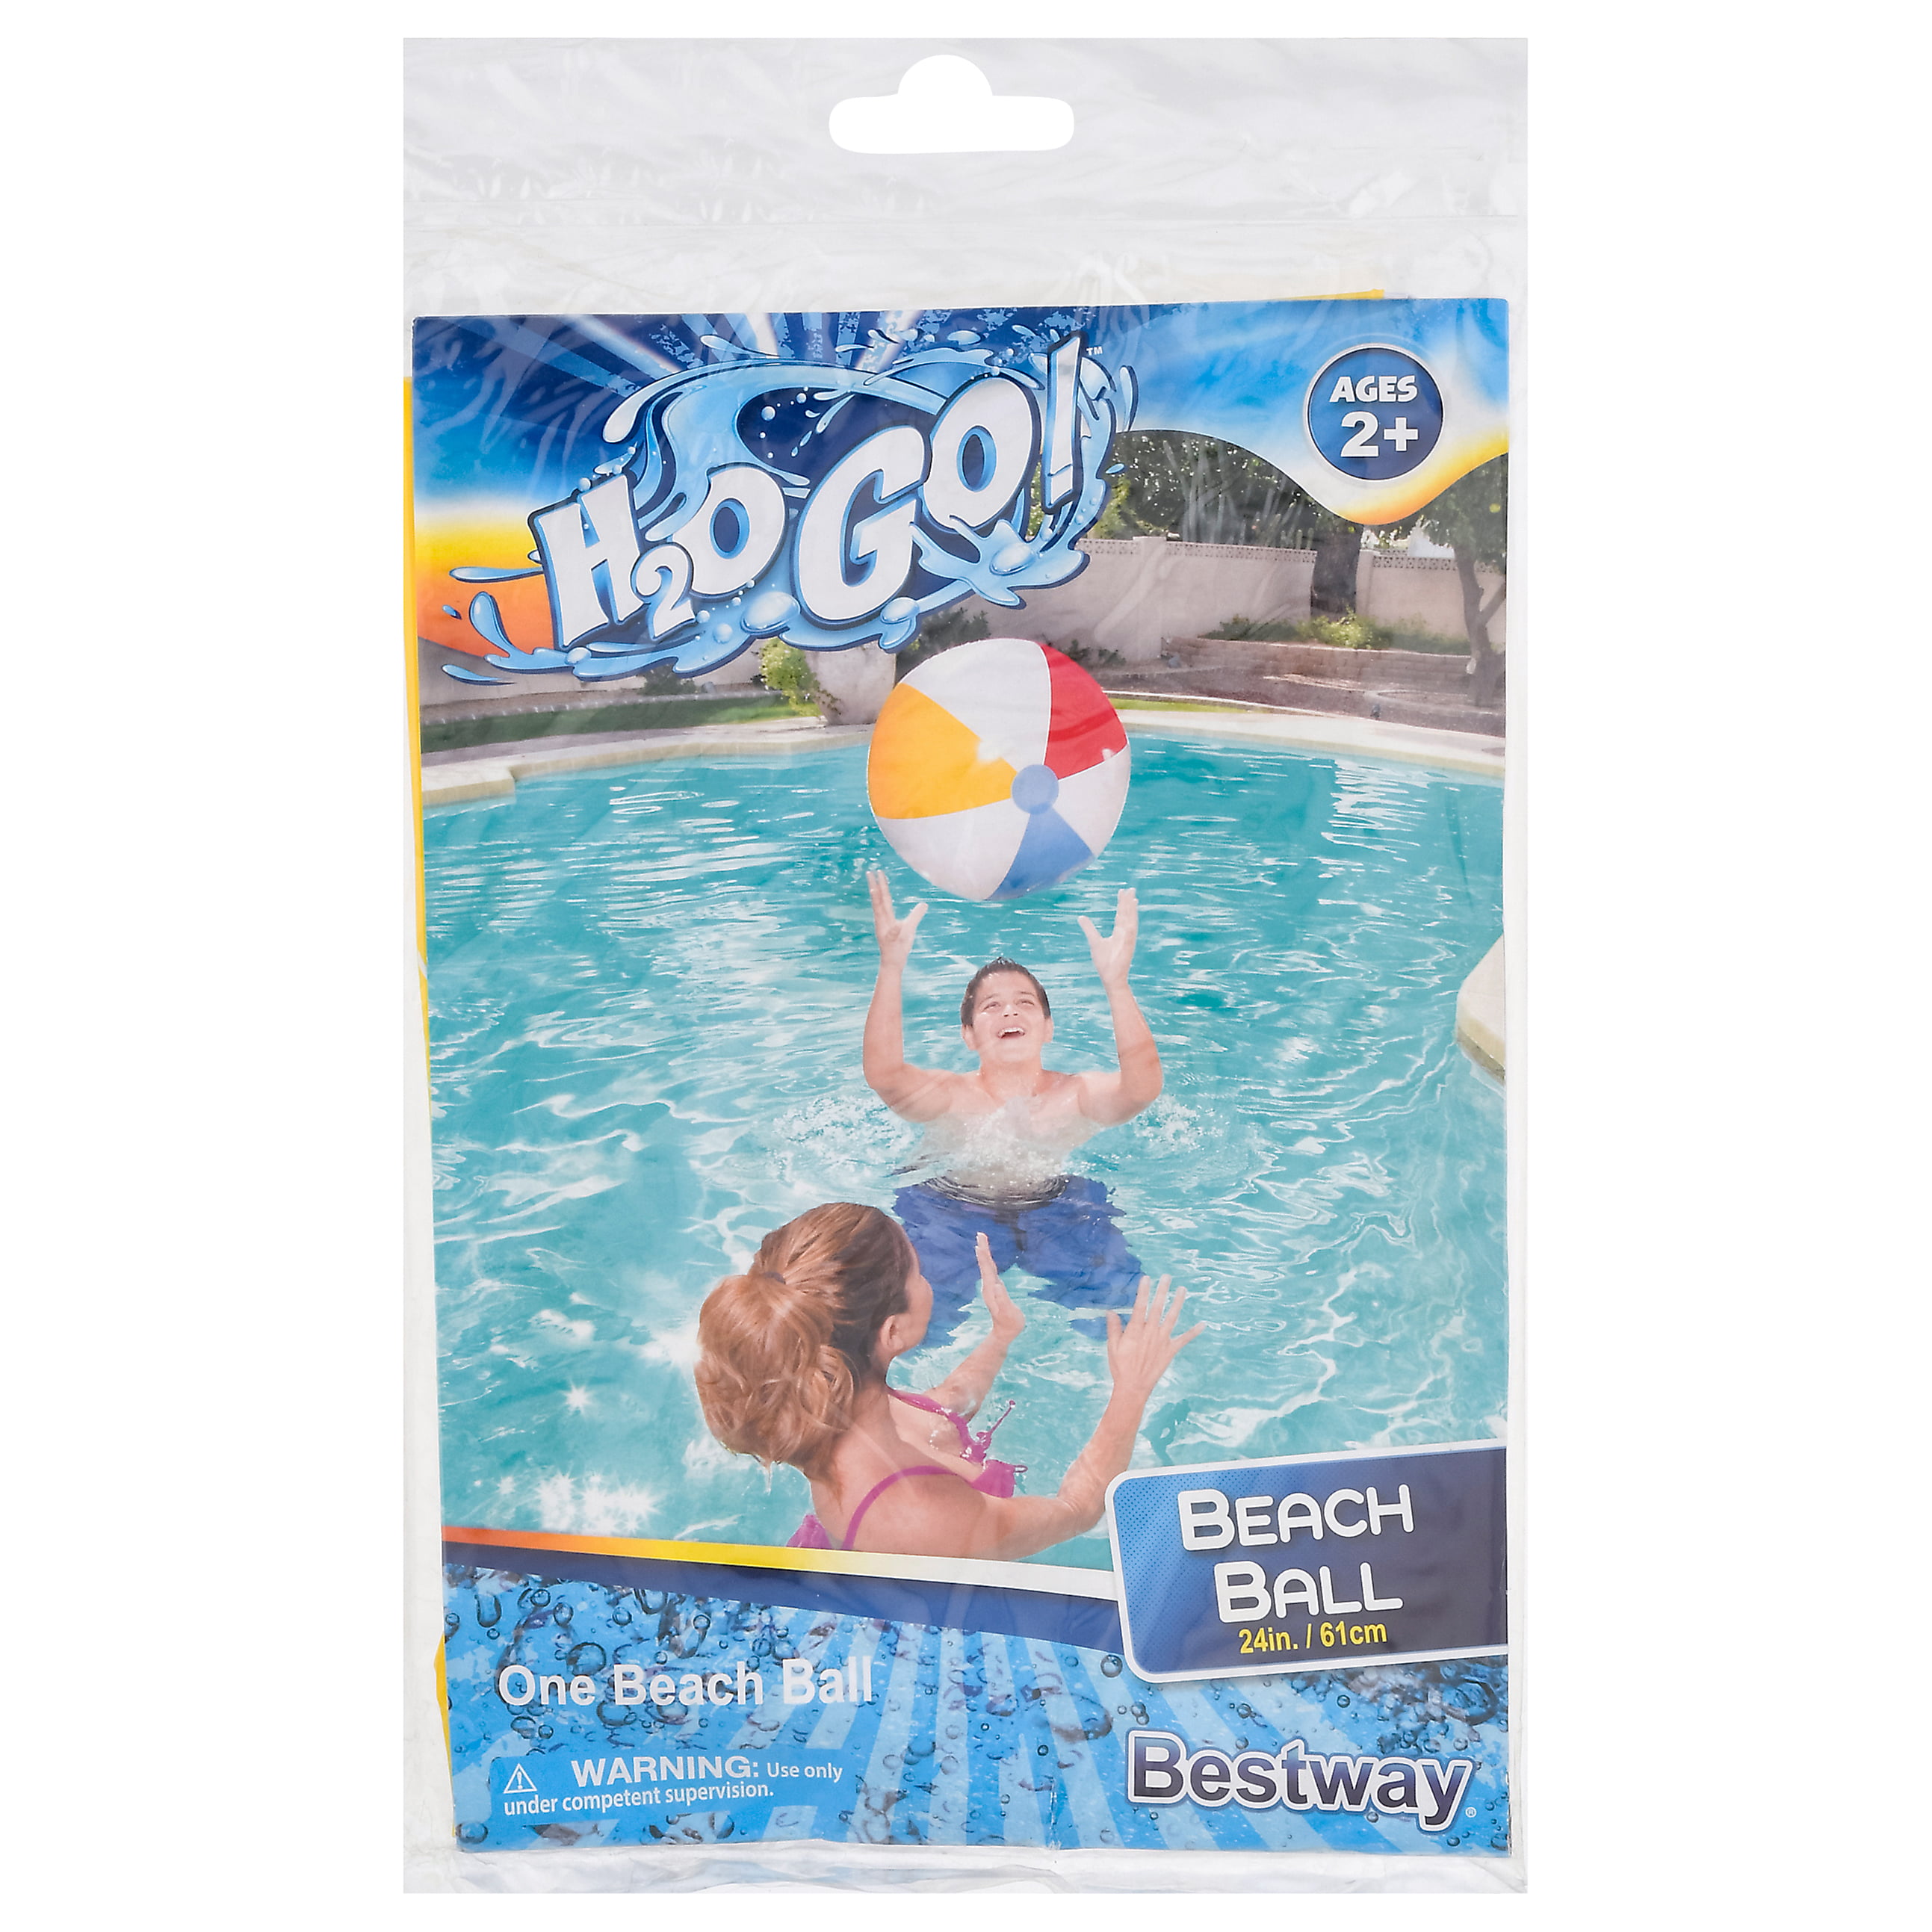 Lot of 2 H2O Go Pop Art Inflatable Beach Ball 24 Inch Summer Fun Pool Beach 